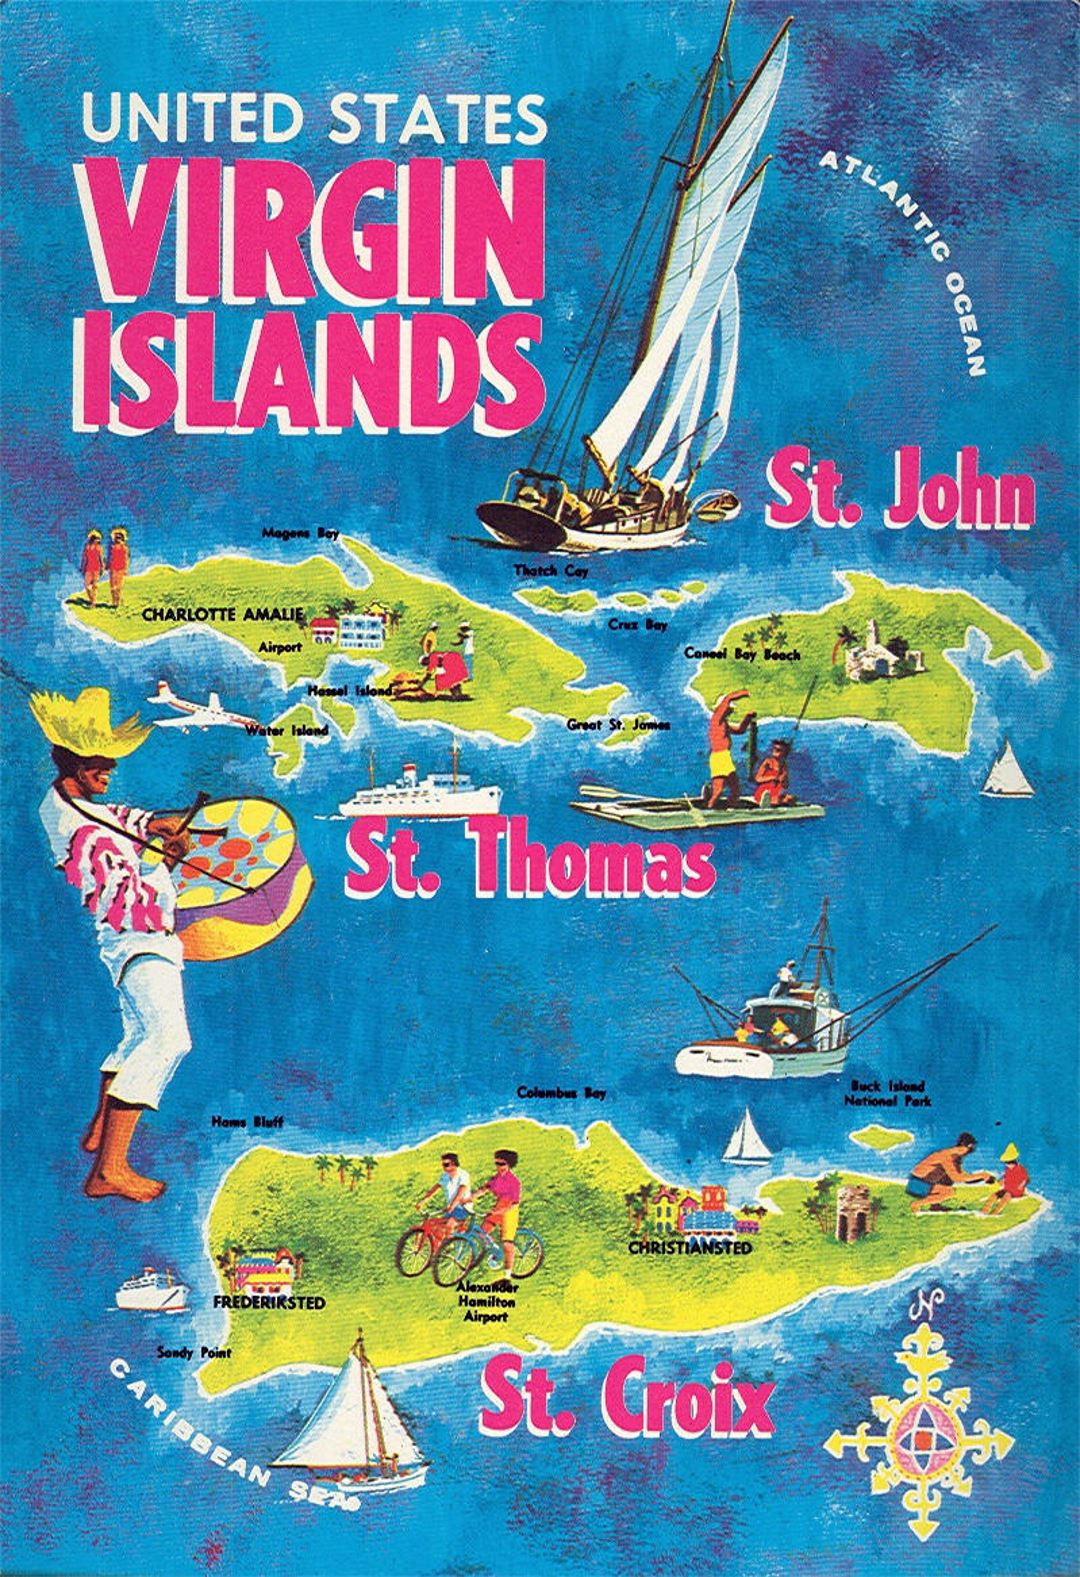 Детальная туристическая иллюстрированная карта Британских Виргинских островов